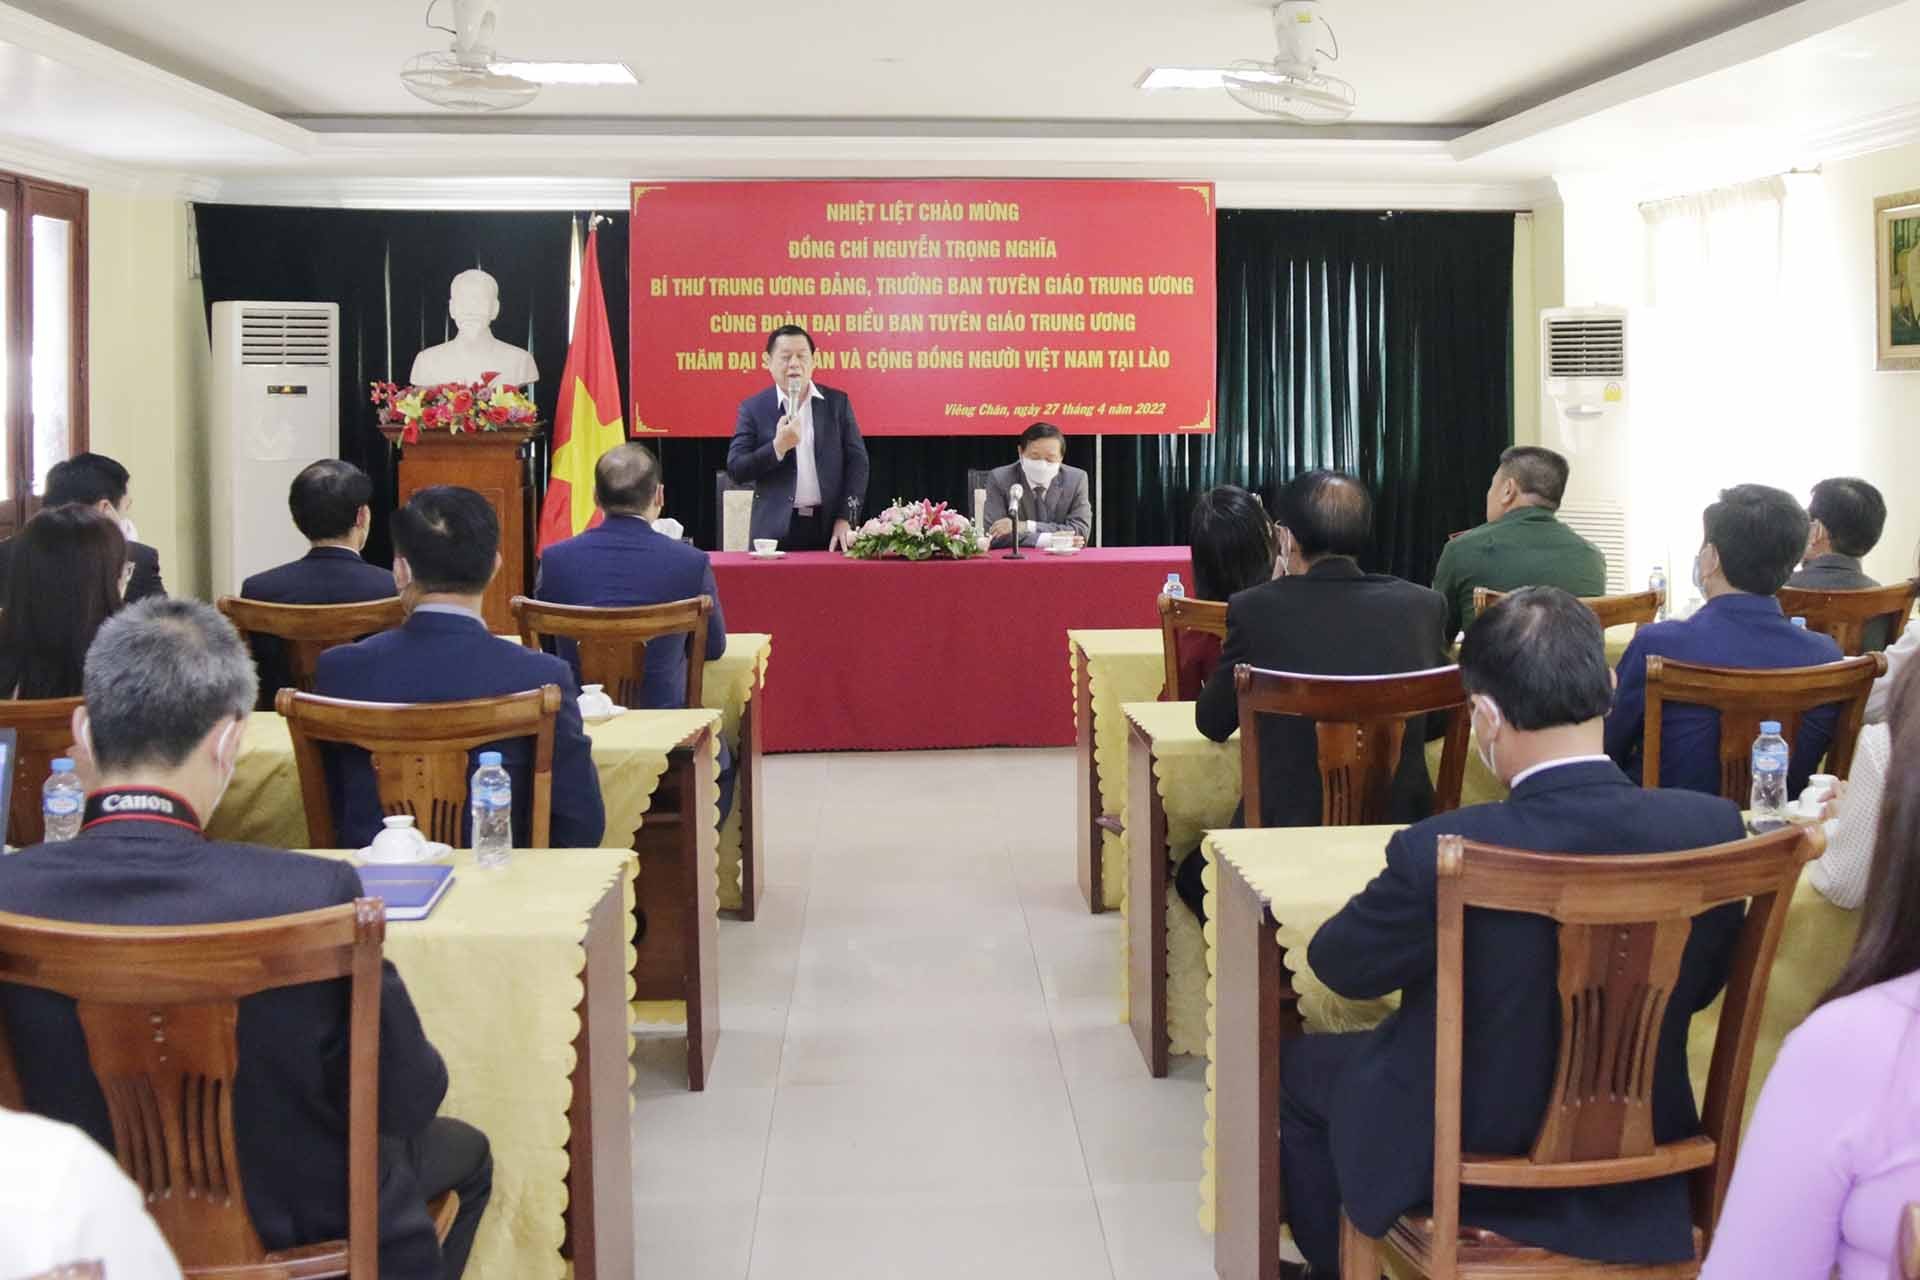 Đồng chí Nguyễn Trọng Nghĩa thăm Đại sứ quán Việt Nam tại Lào. (Nguồn: TTXVN)